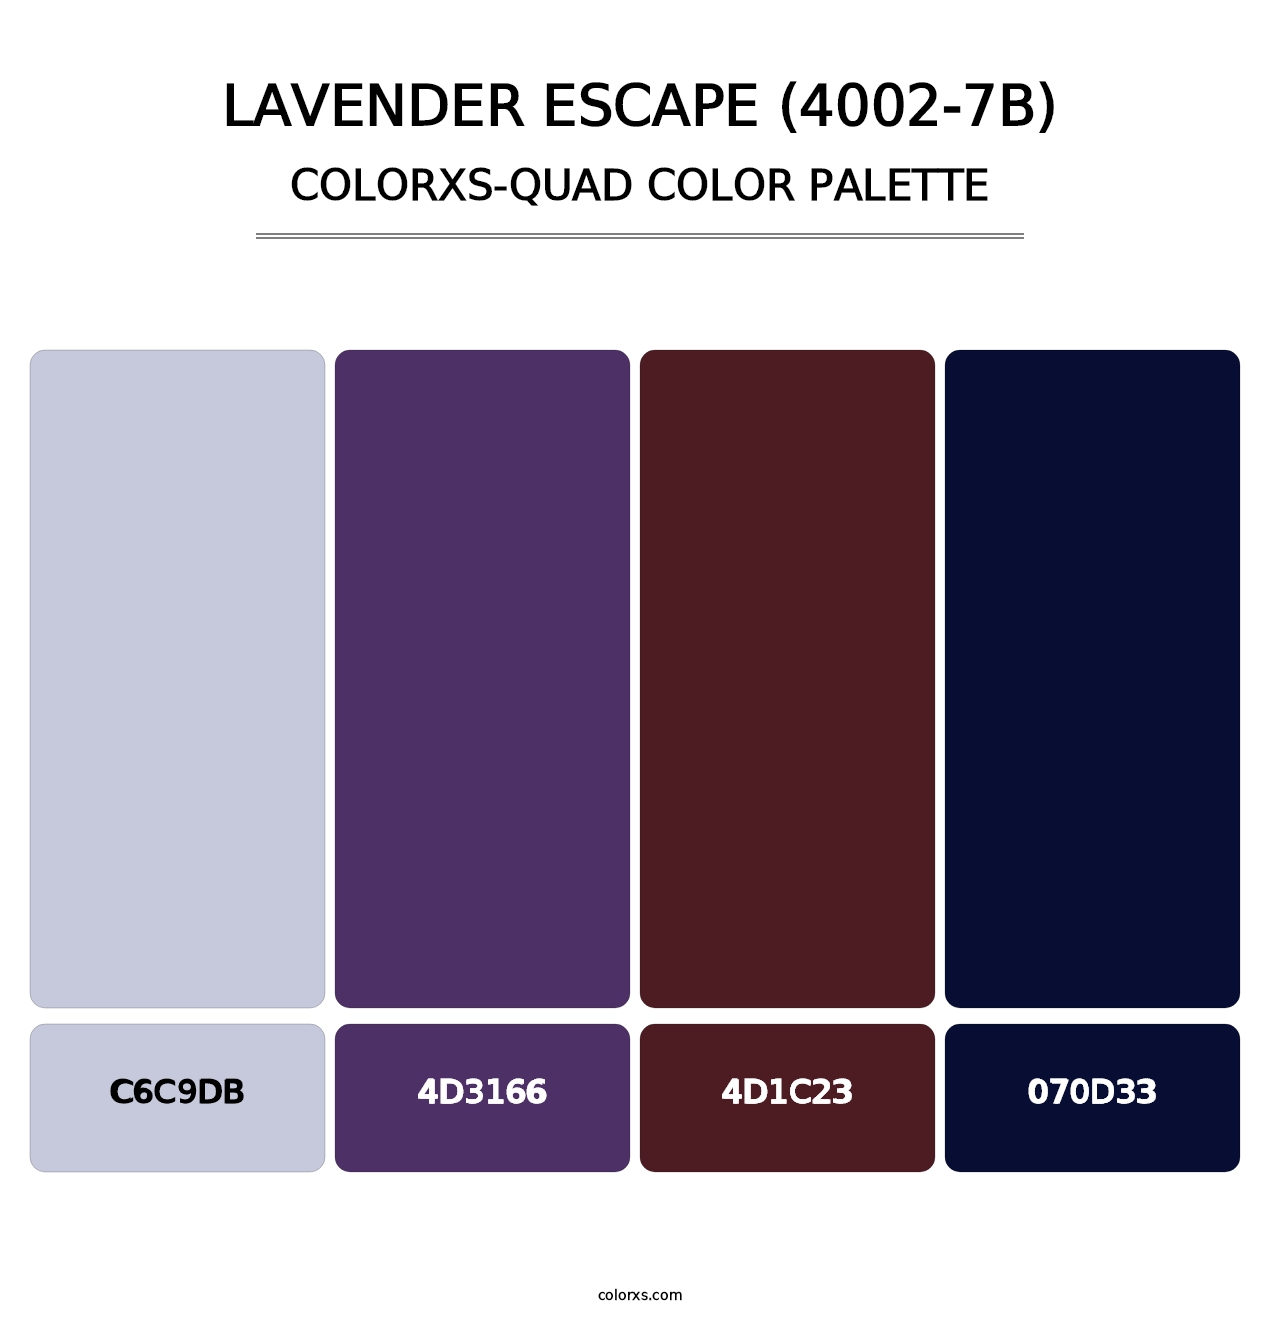 Lavender Escape (4002-7B) - Colorxs Quad Palette